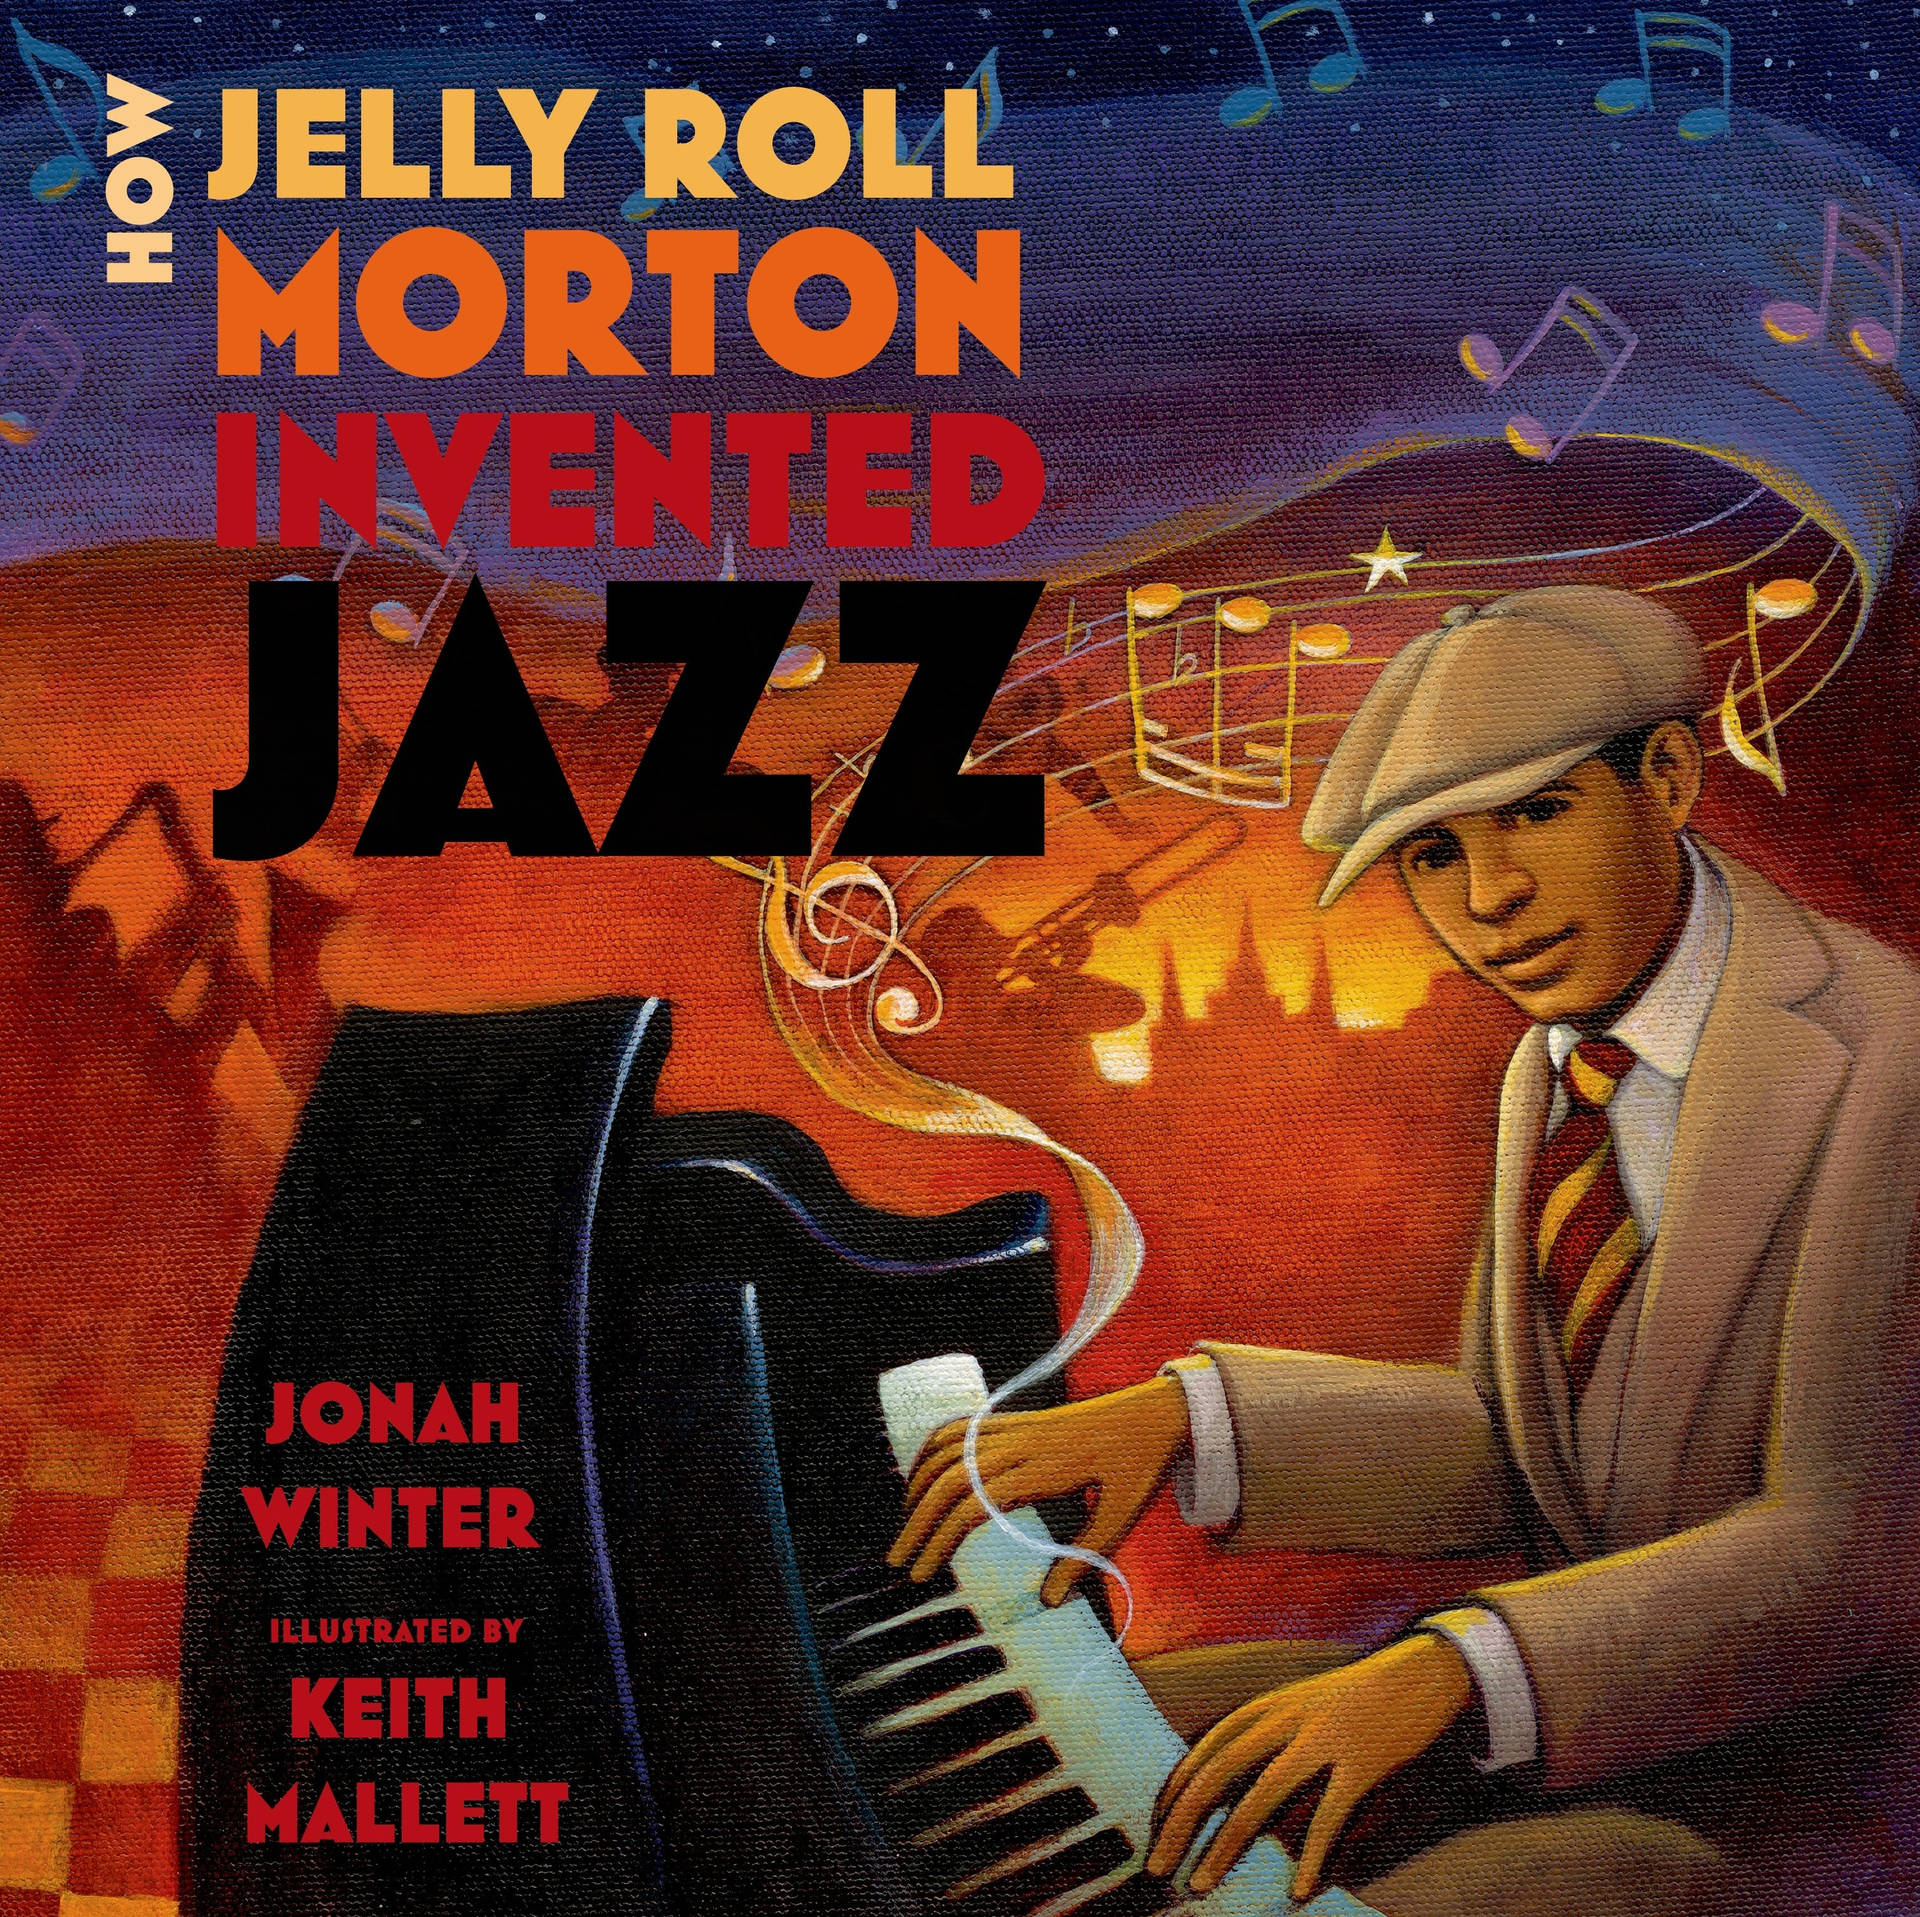 Jelly Roll Morton Book Cover Art Wallpaper